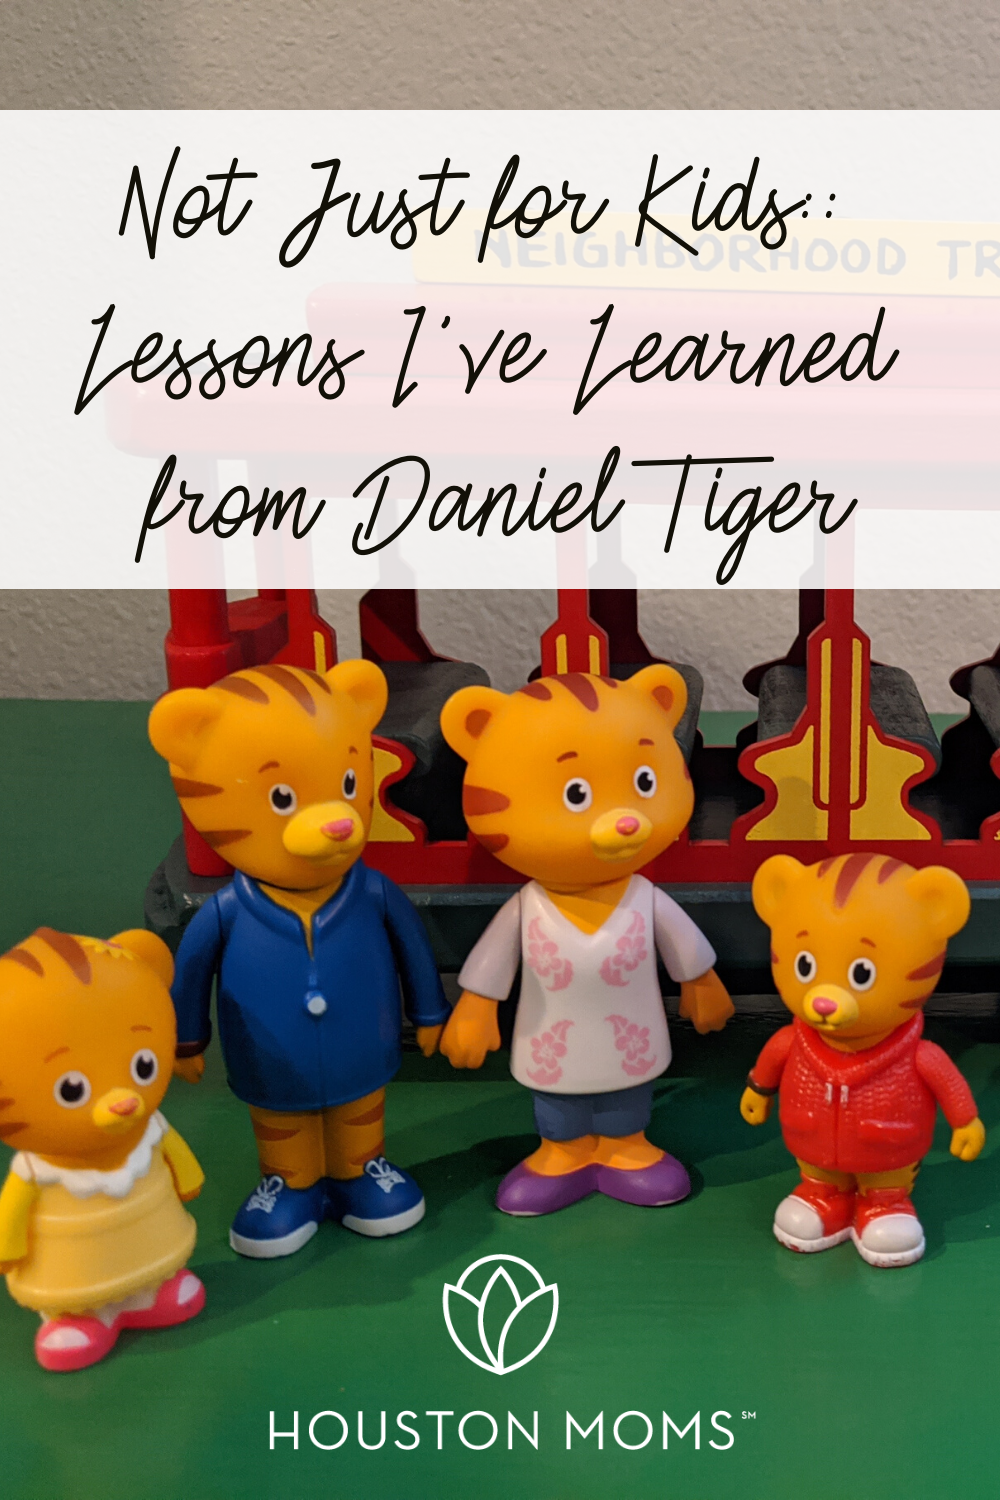 Houston Moms "Not Just For Kids:: Lessons I've Learned from Daniel Tiger" #houstonmoms #houstonmomsblog #momsaroundhouston